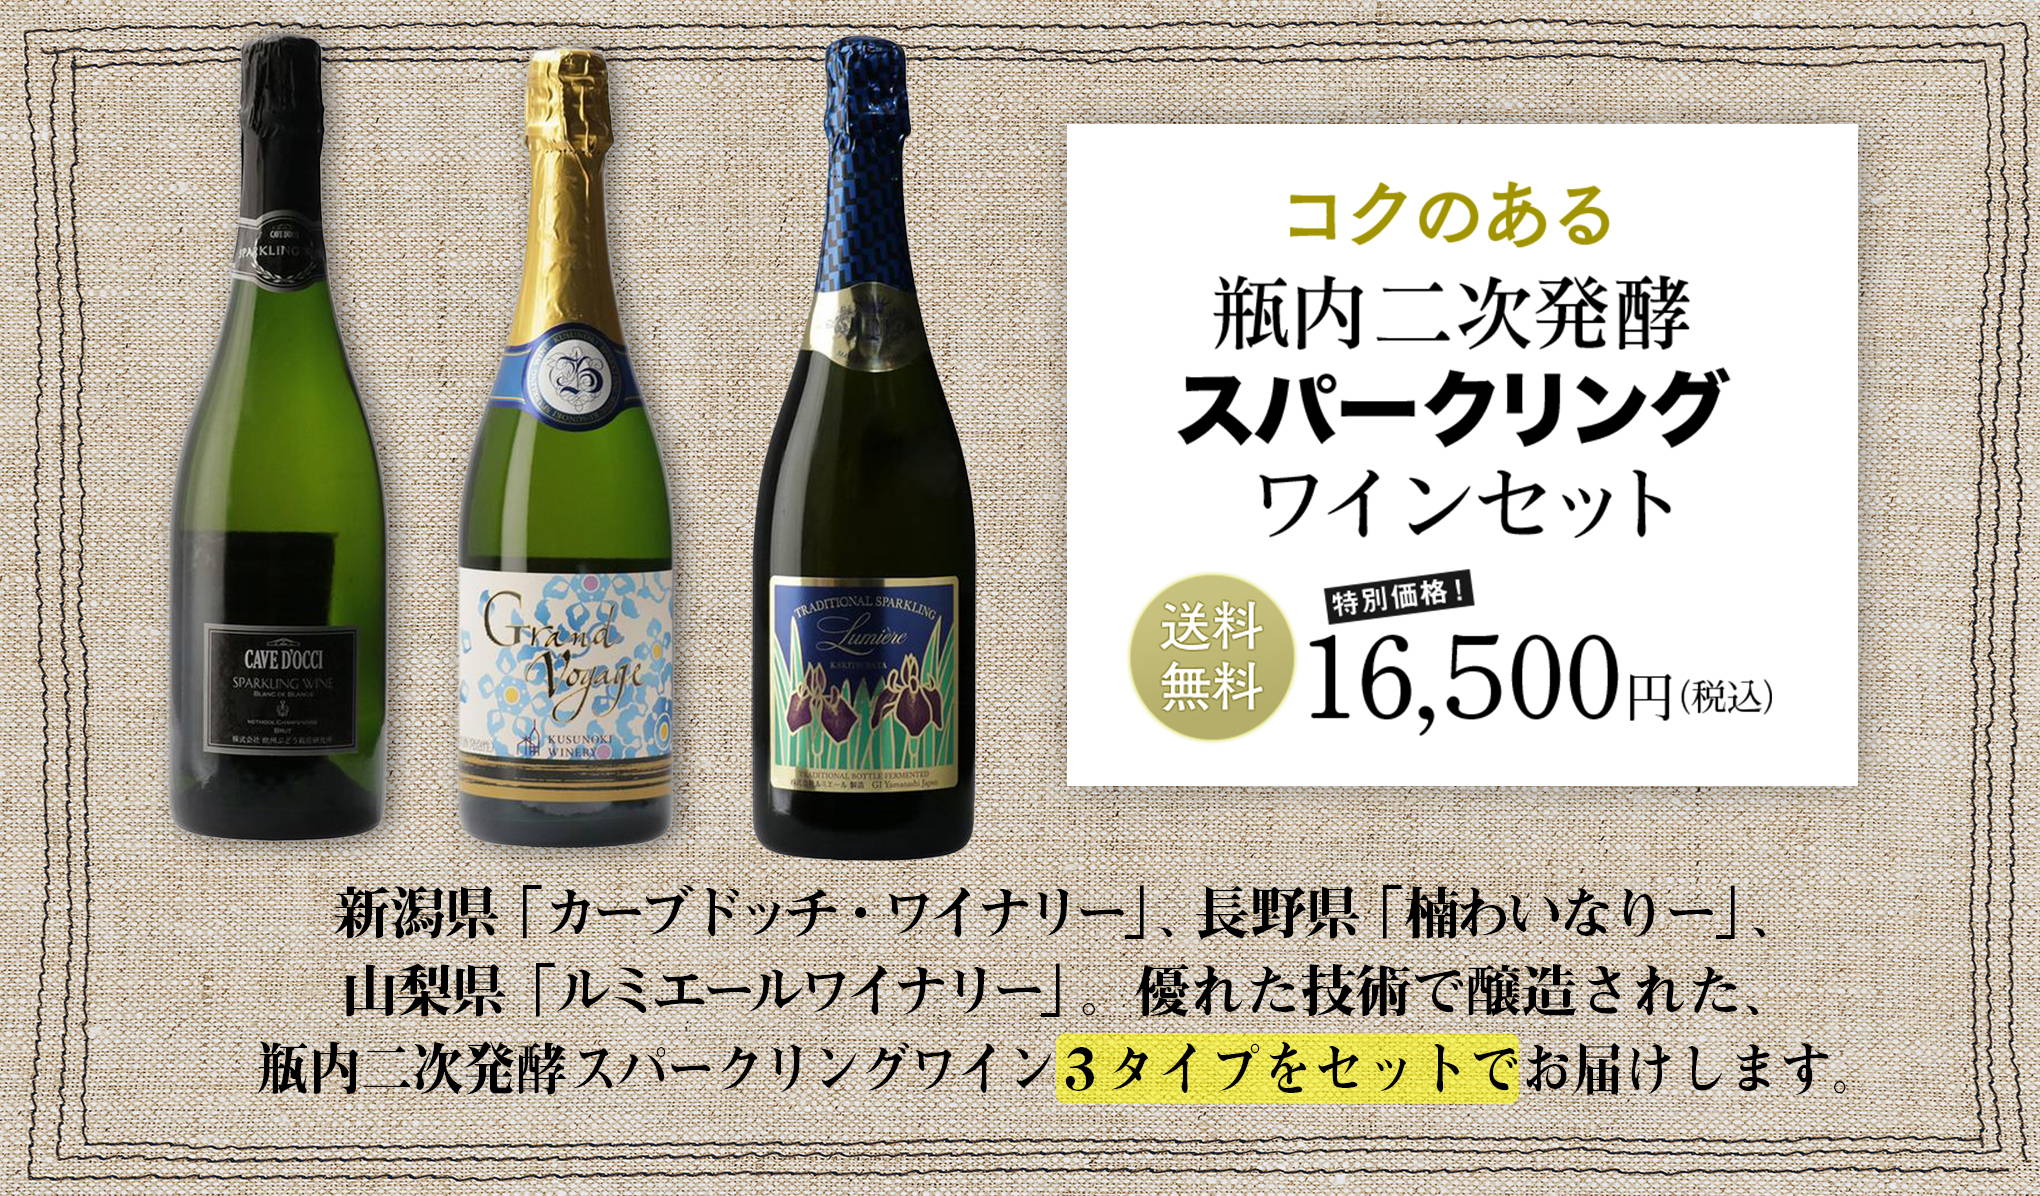 日本ワインを知り尽くしたバイヤーが選ぶ、『wa-syu』限定セット vol.5